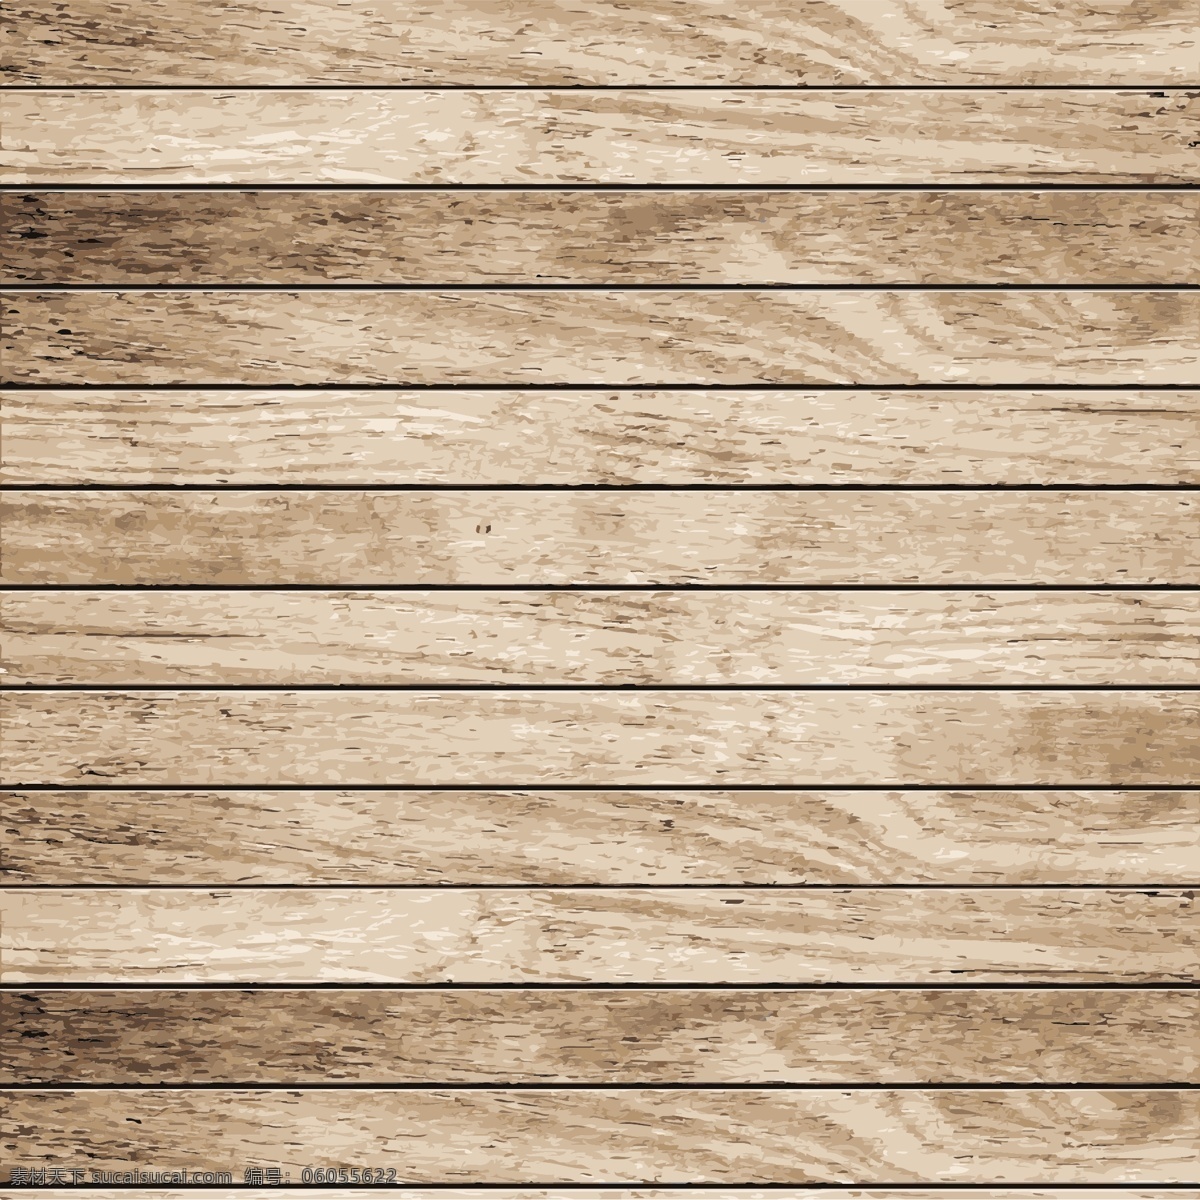 木纹 木板 木地板 纹理 货架 展柜 透明 亚克力板 木质材质 贴图 背景 木纹木板矢量 底纹背景 矢量 底纹 底纹边框